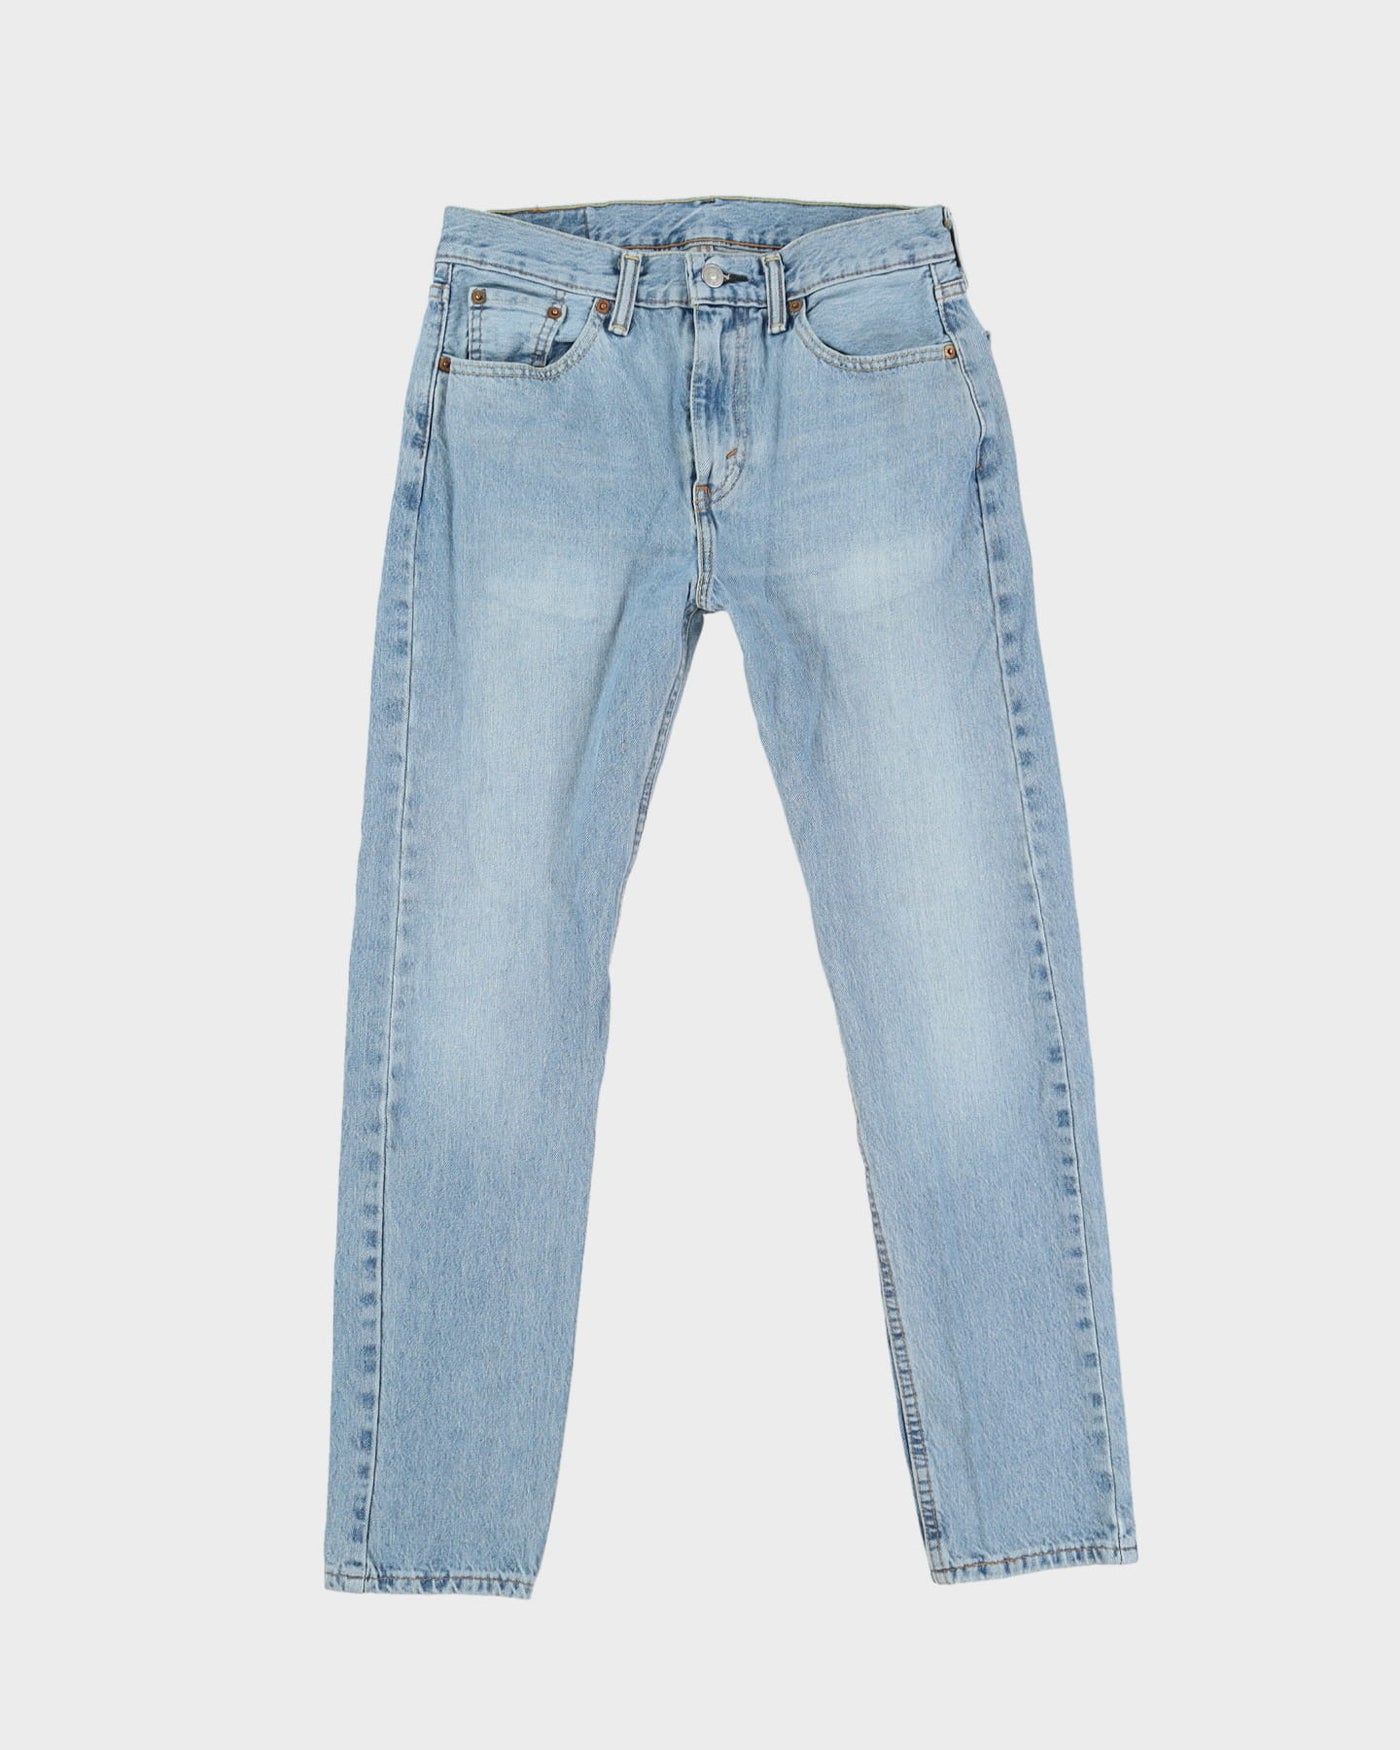 Levi's 501 Blue Light Wash Jeans - W29 L29